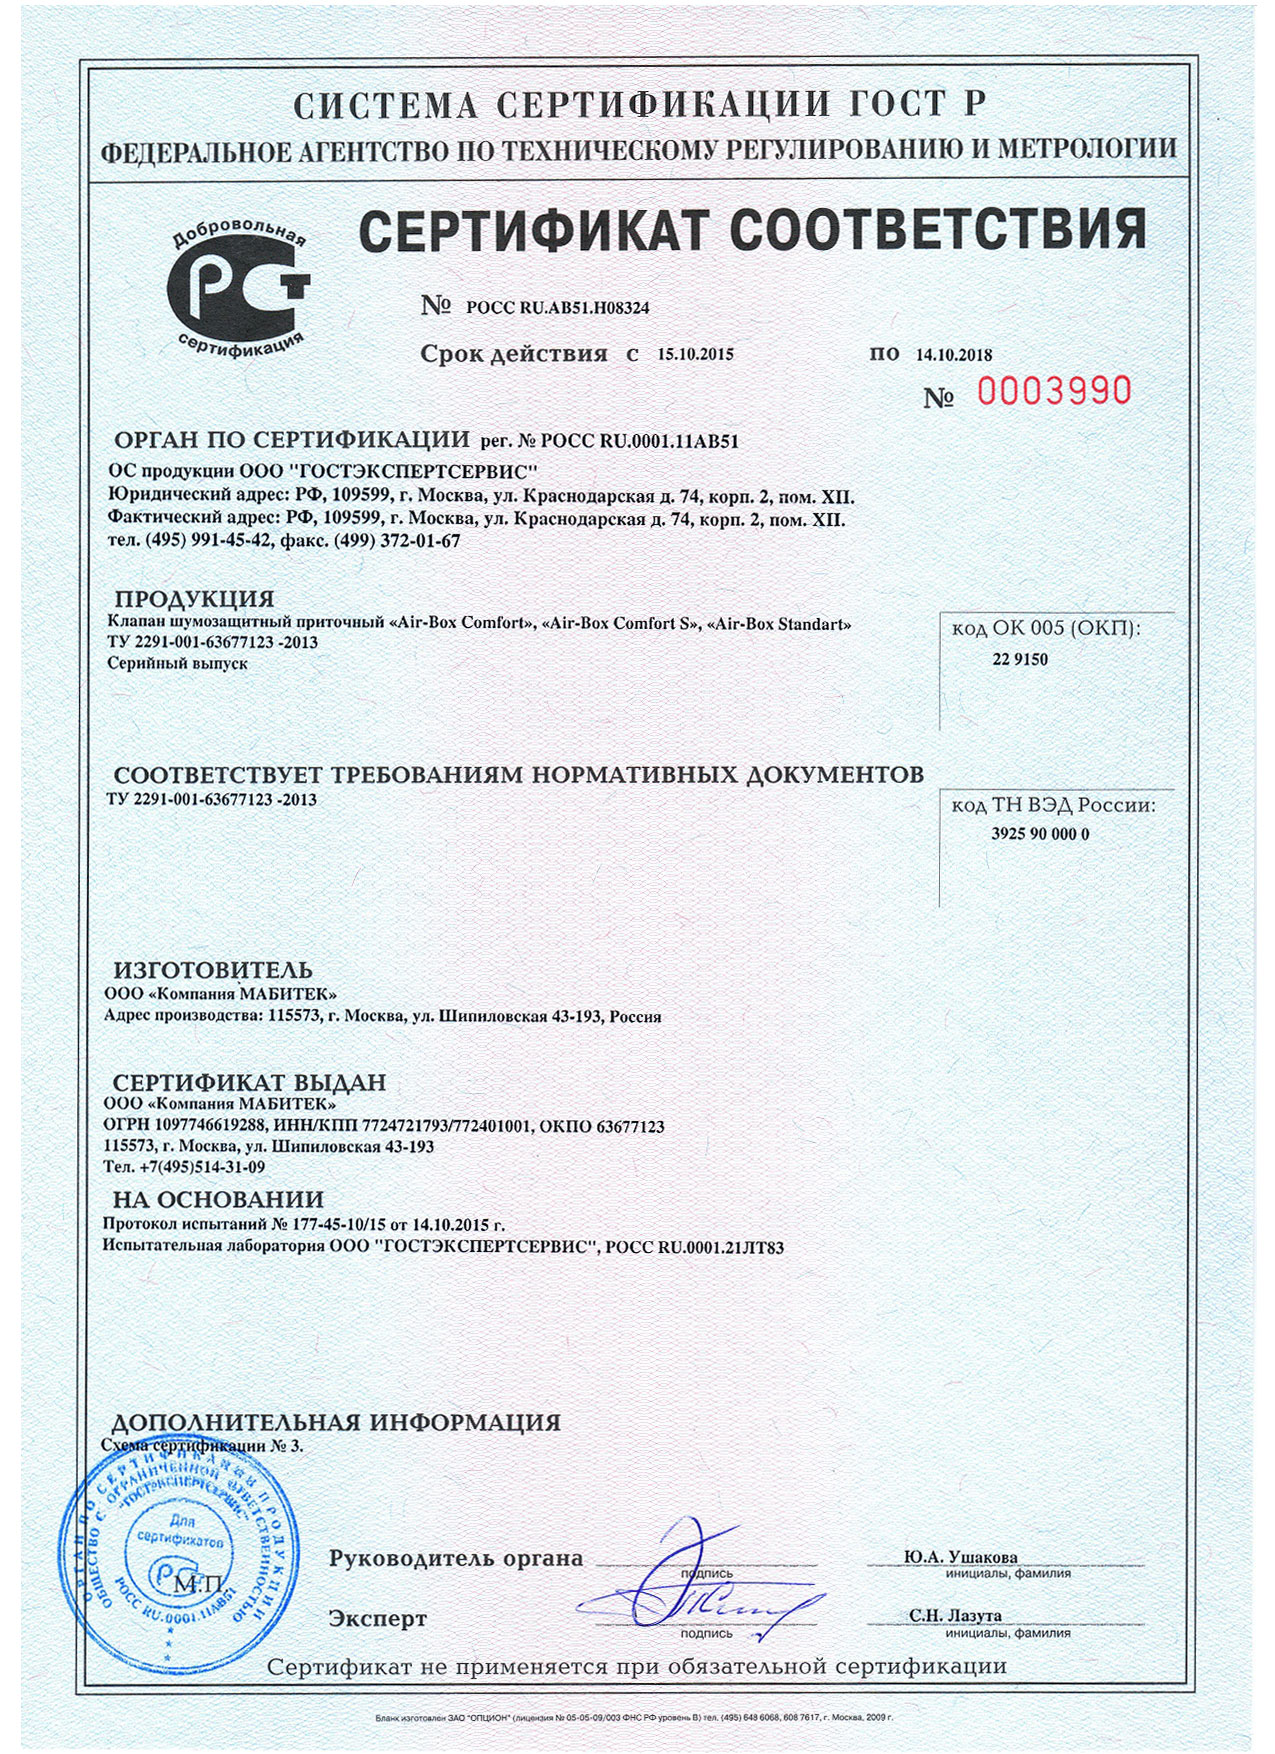 Сертификат соответствия на клапан шумозащитный приточный Air-Box серии Comfort, Comfort S, Standart.jpg